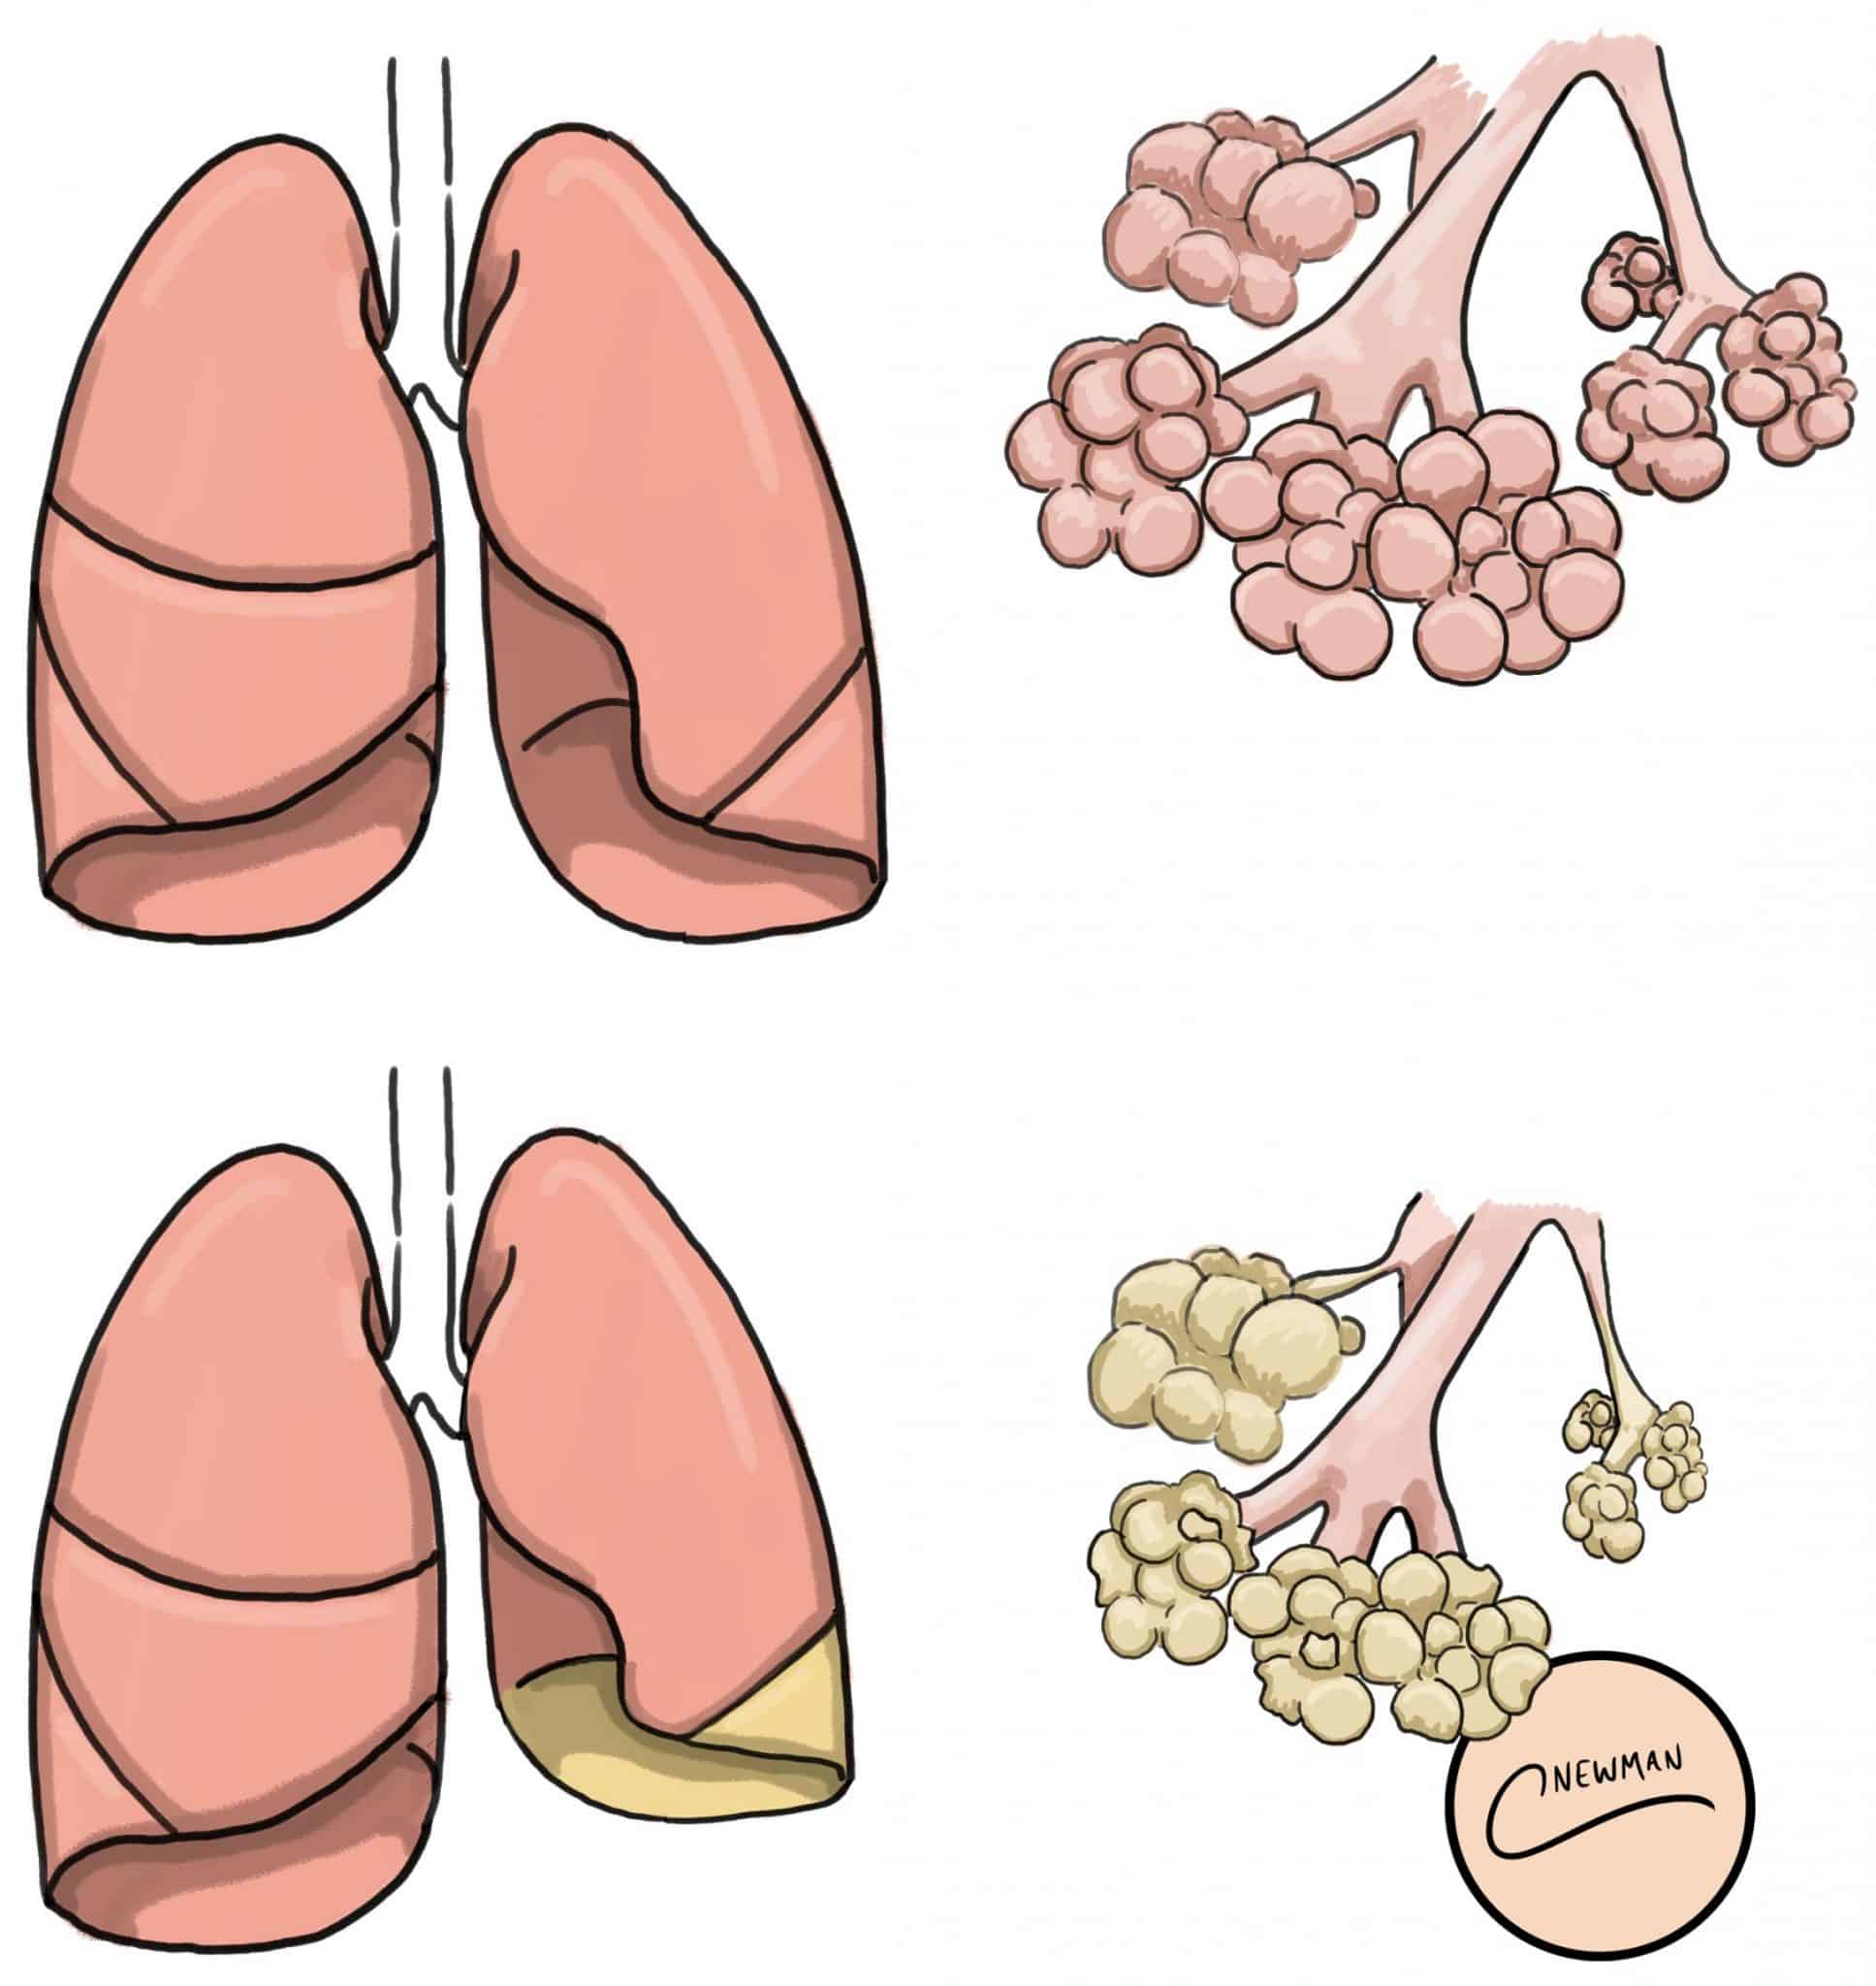 atelectasis lung sounds